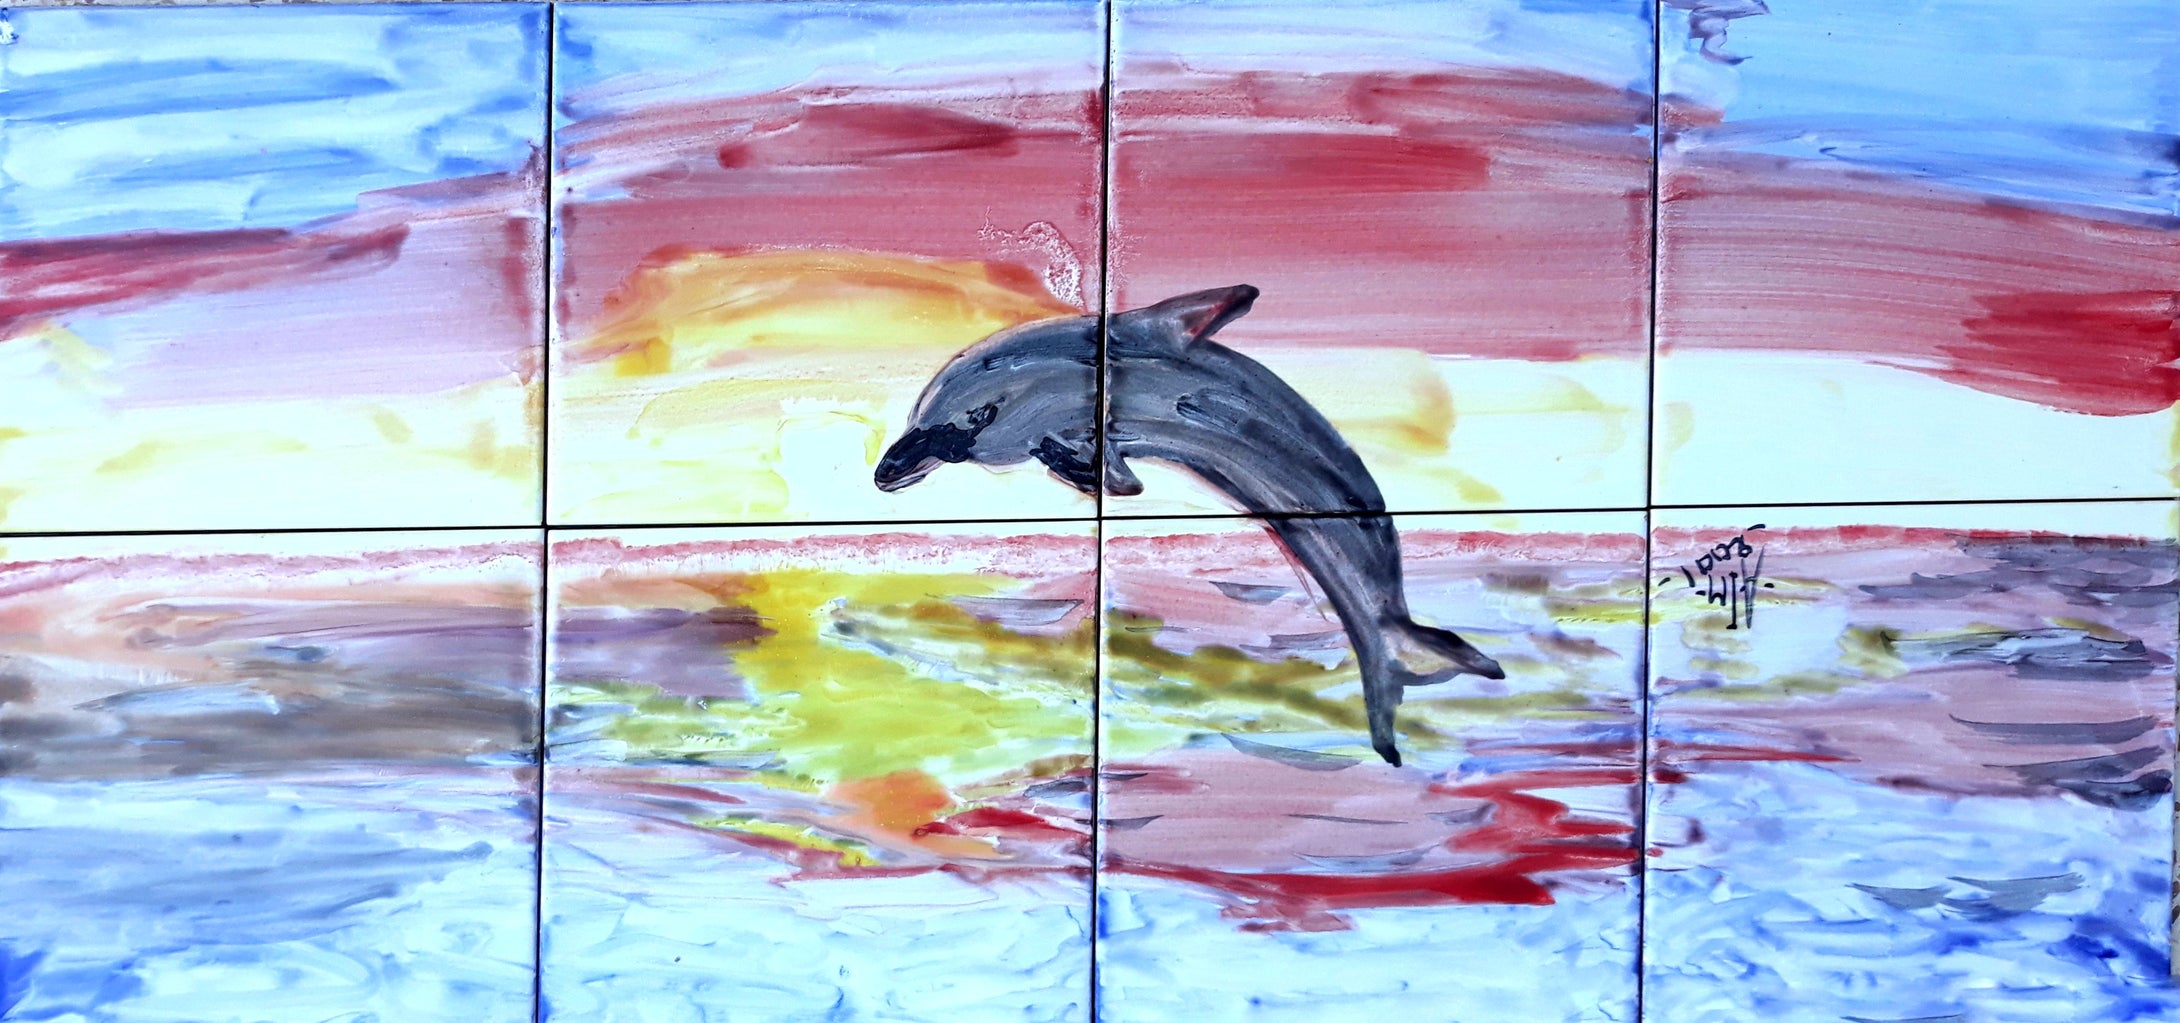 Dolphin Design Mosaic Mural